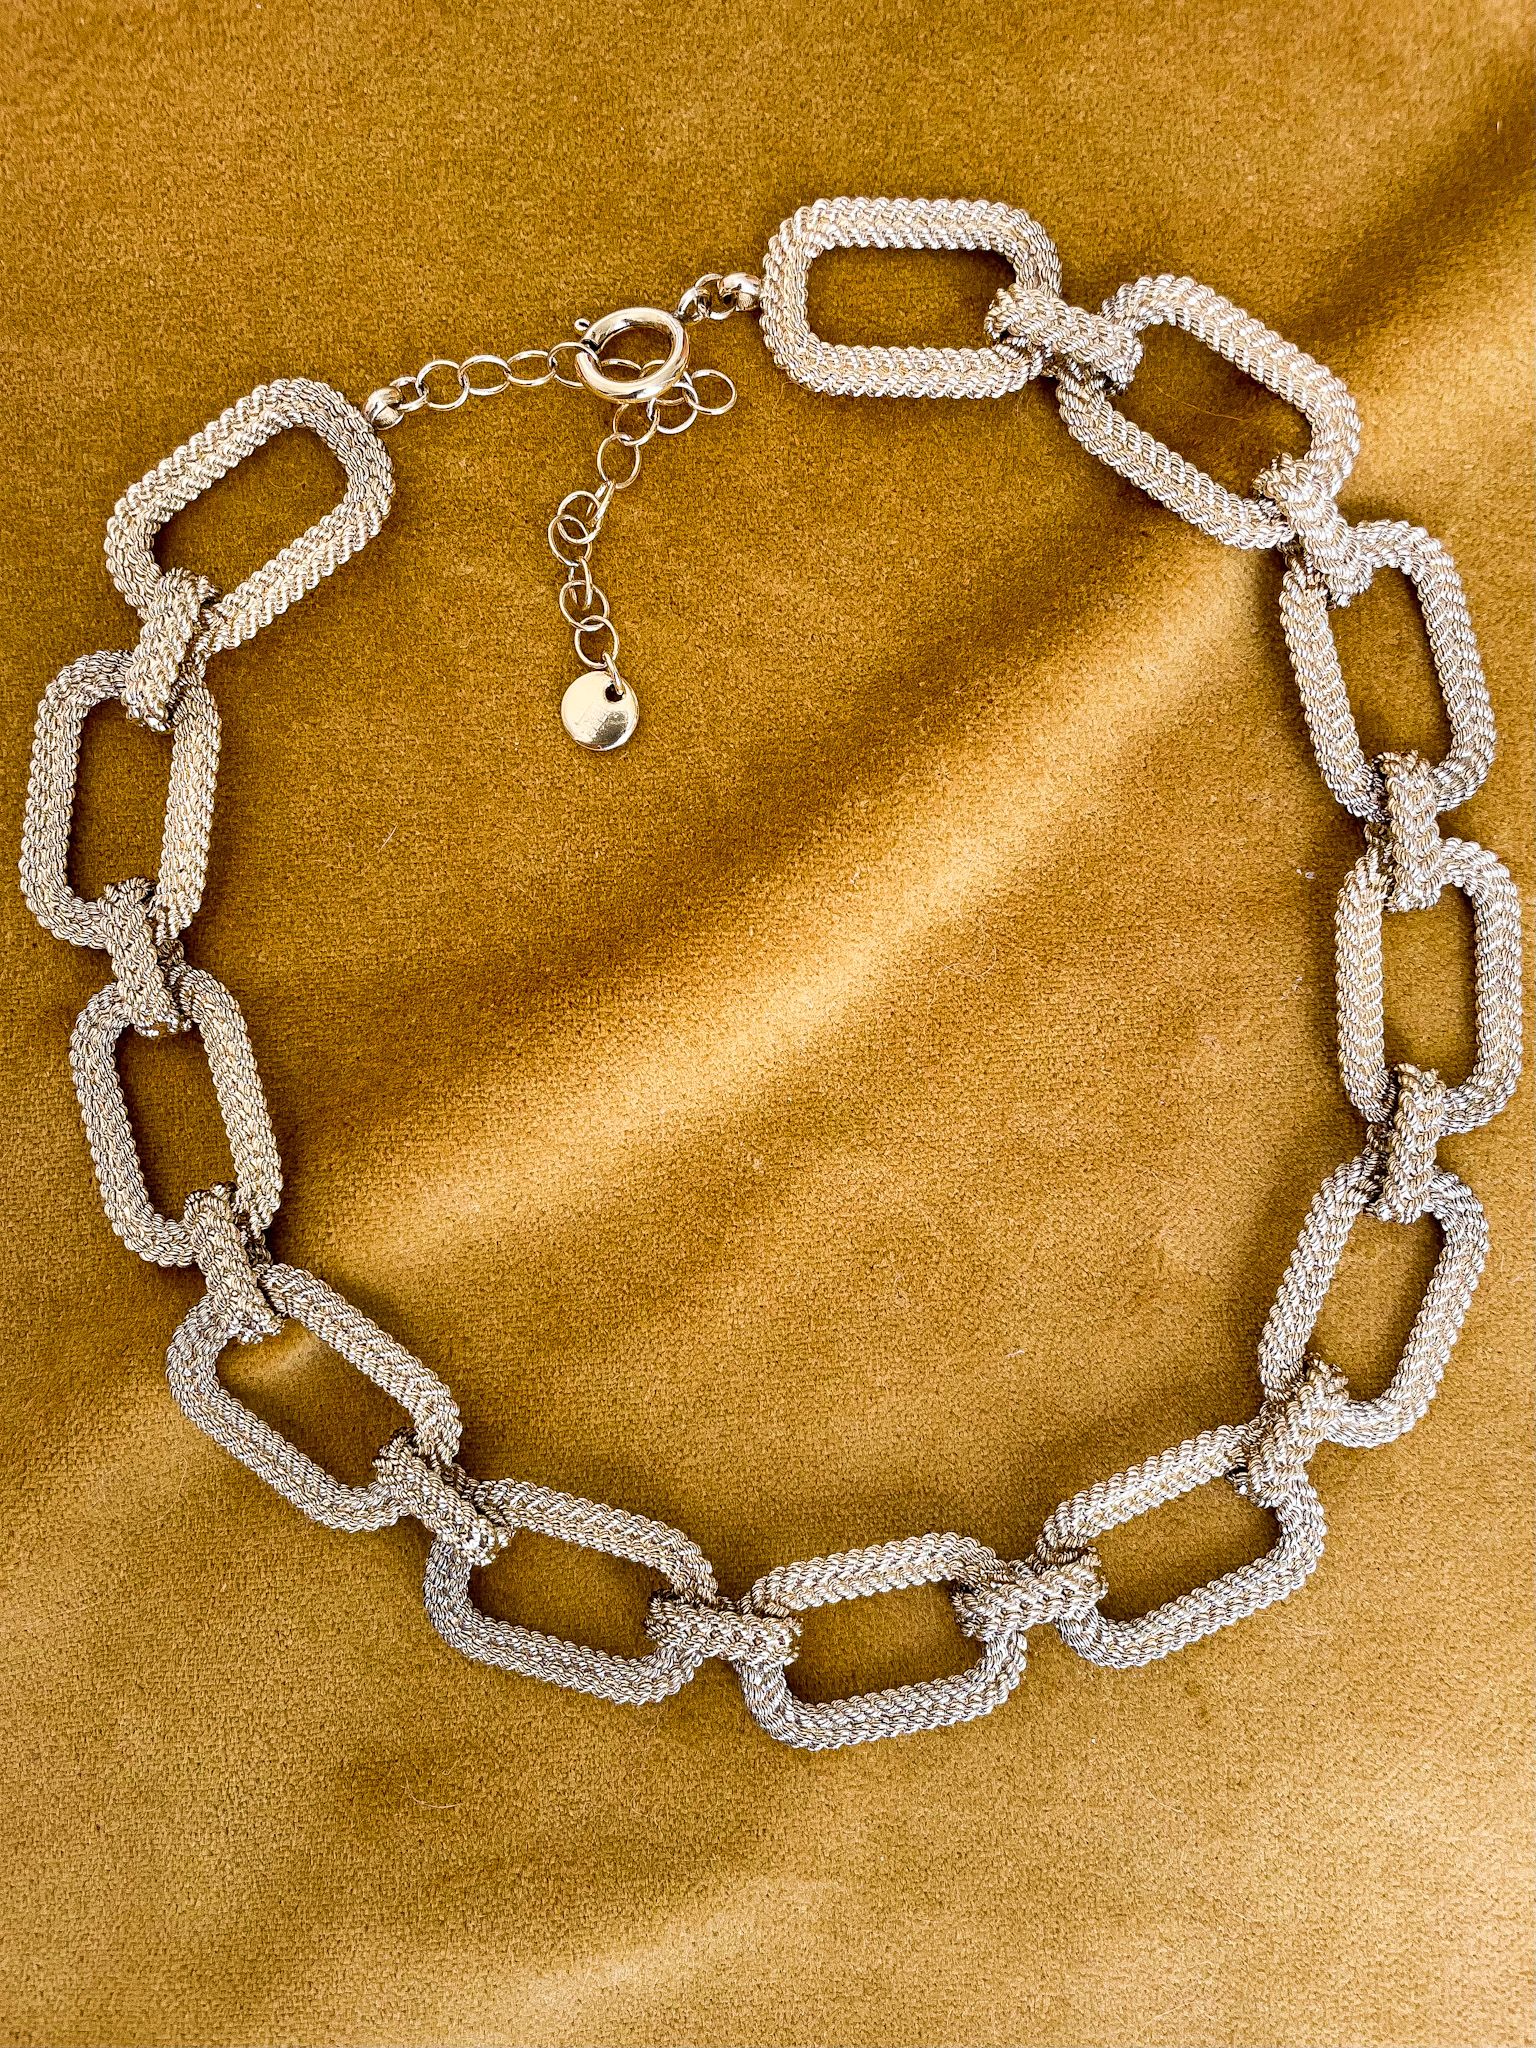 Treccia necklace - Bénédicte Paris